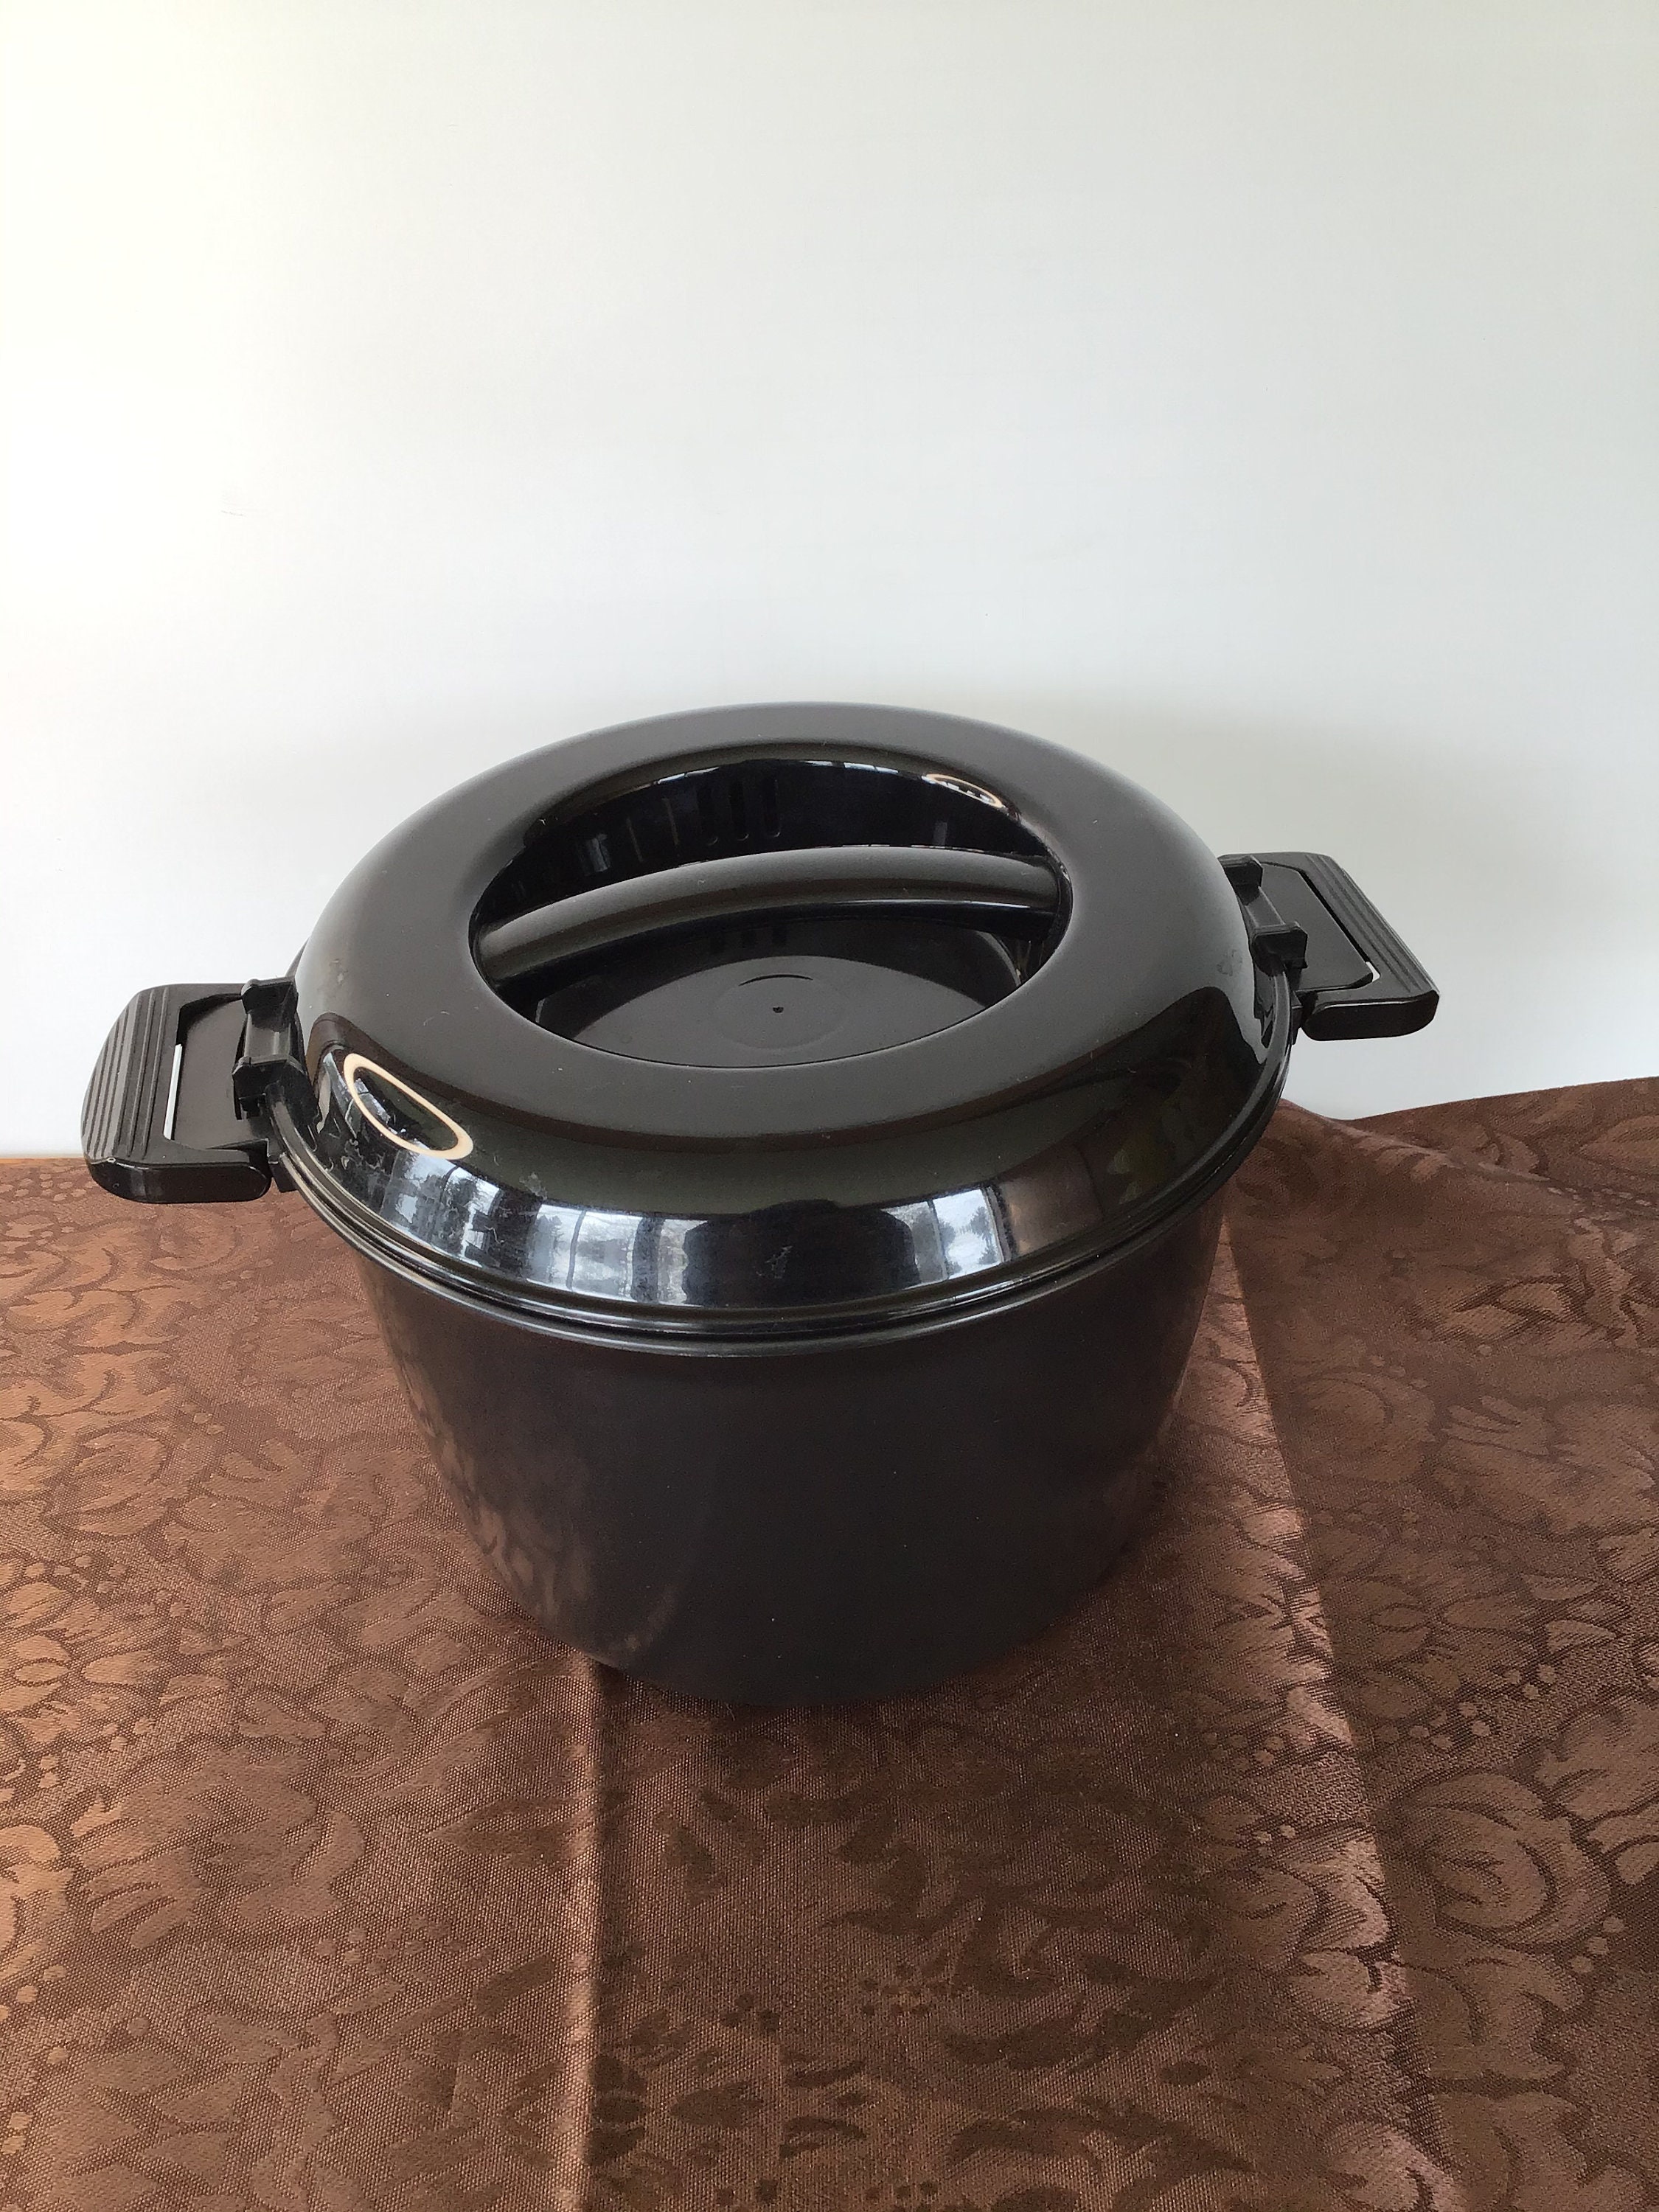 9pcs Accessories For Instant Pot,steamer Basket,egg Steamer Rack